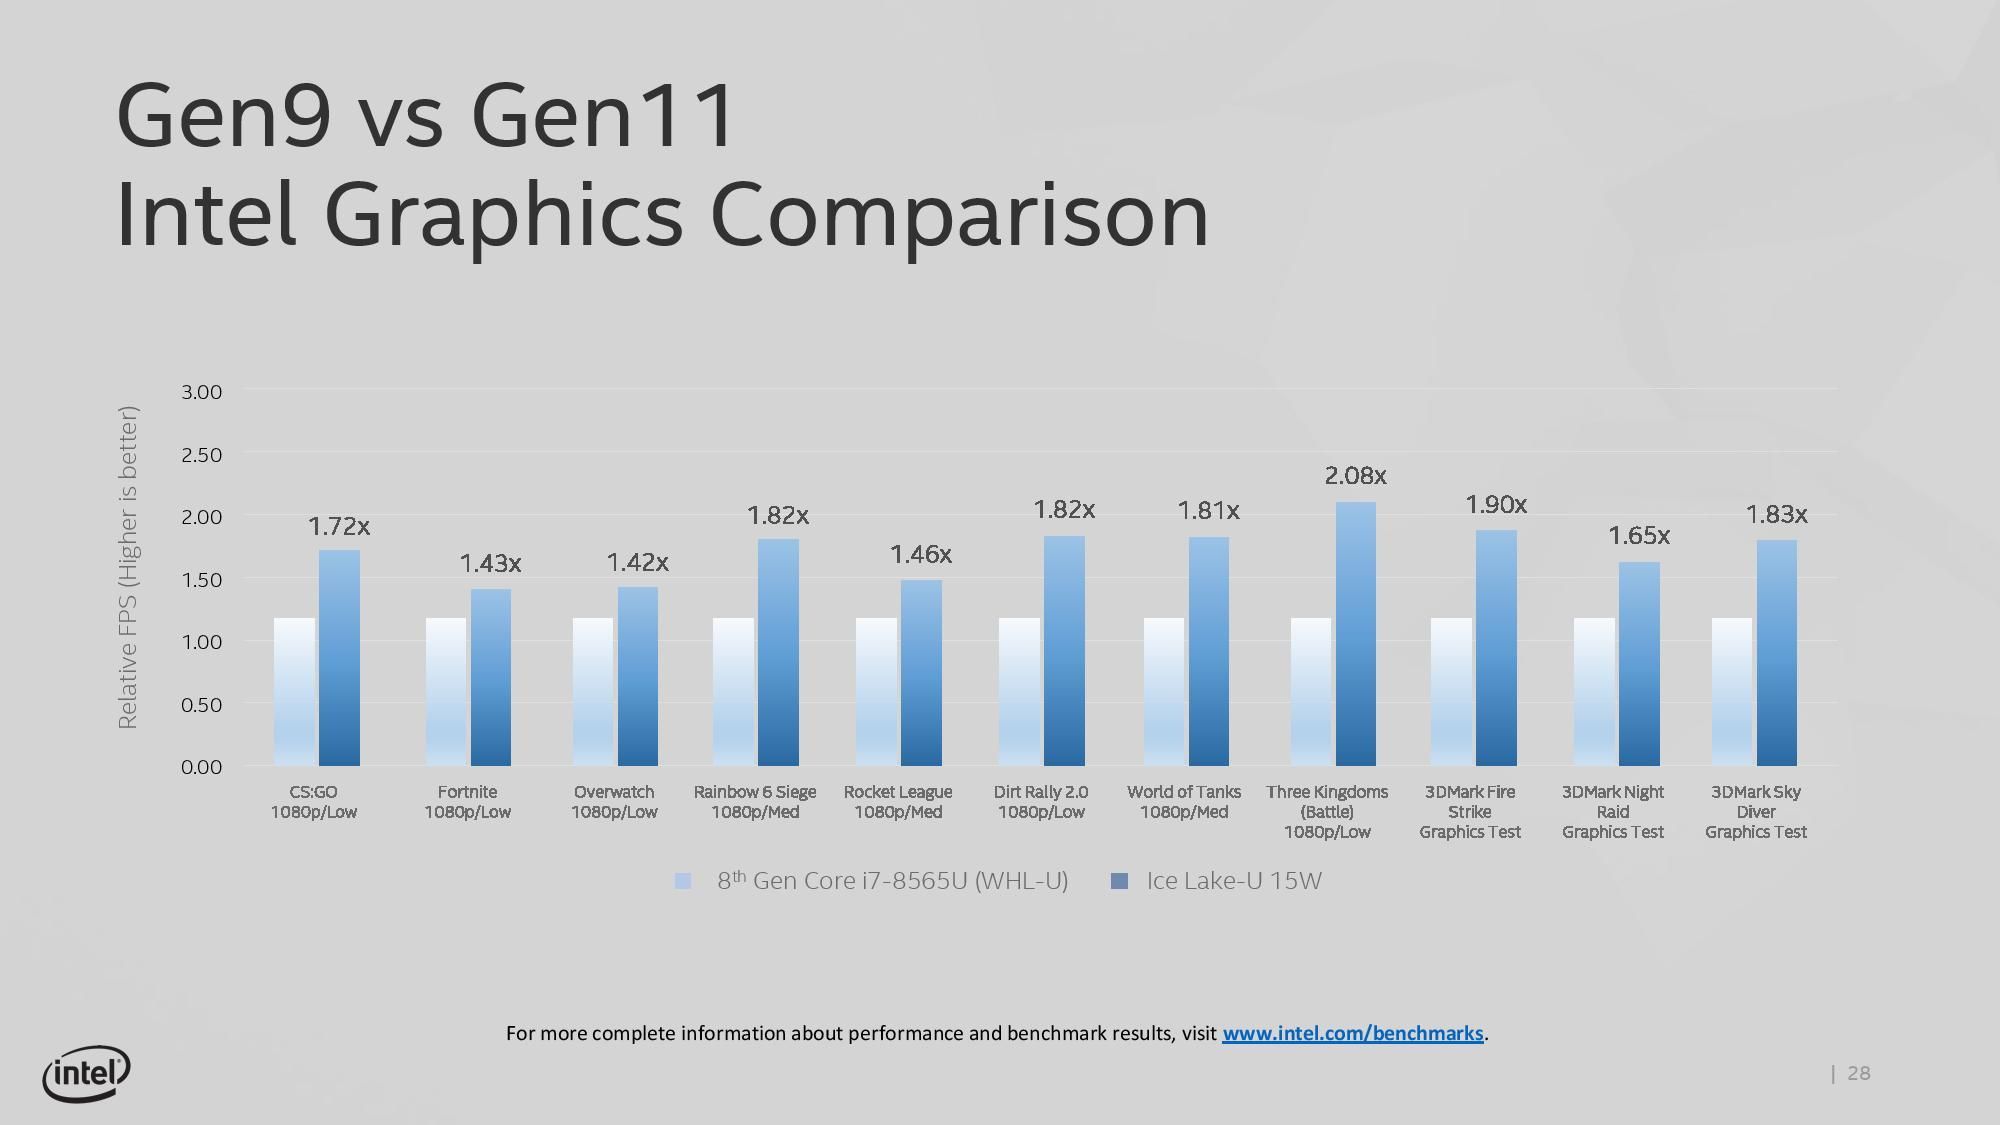 Intel I9 Comparison Chart